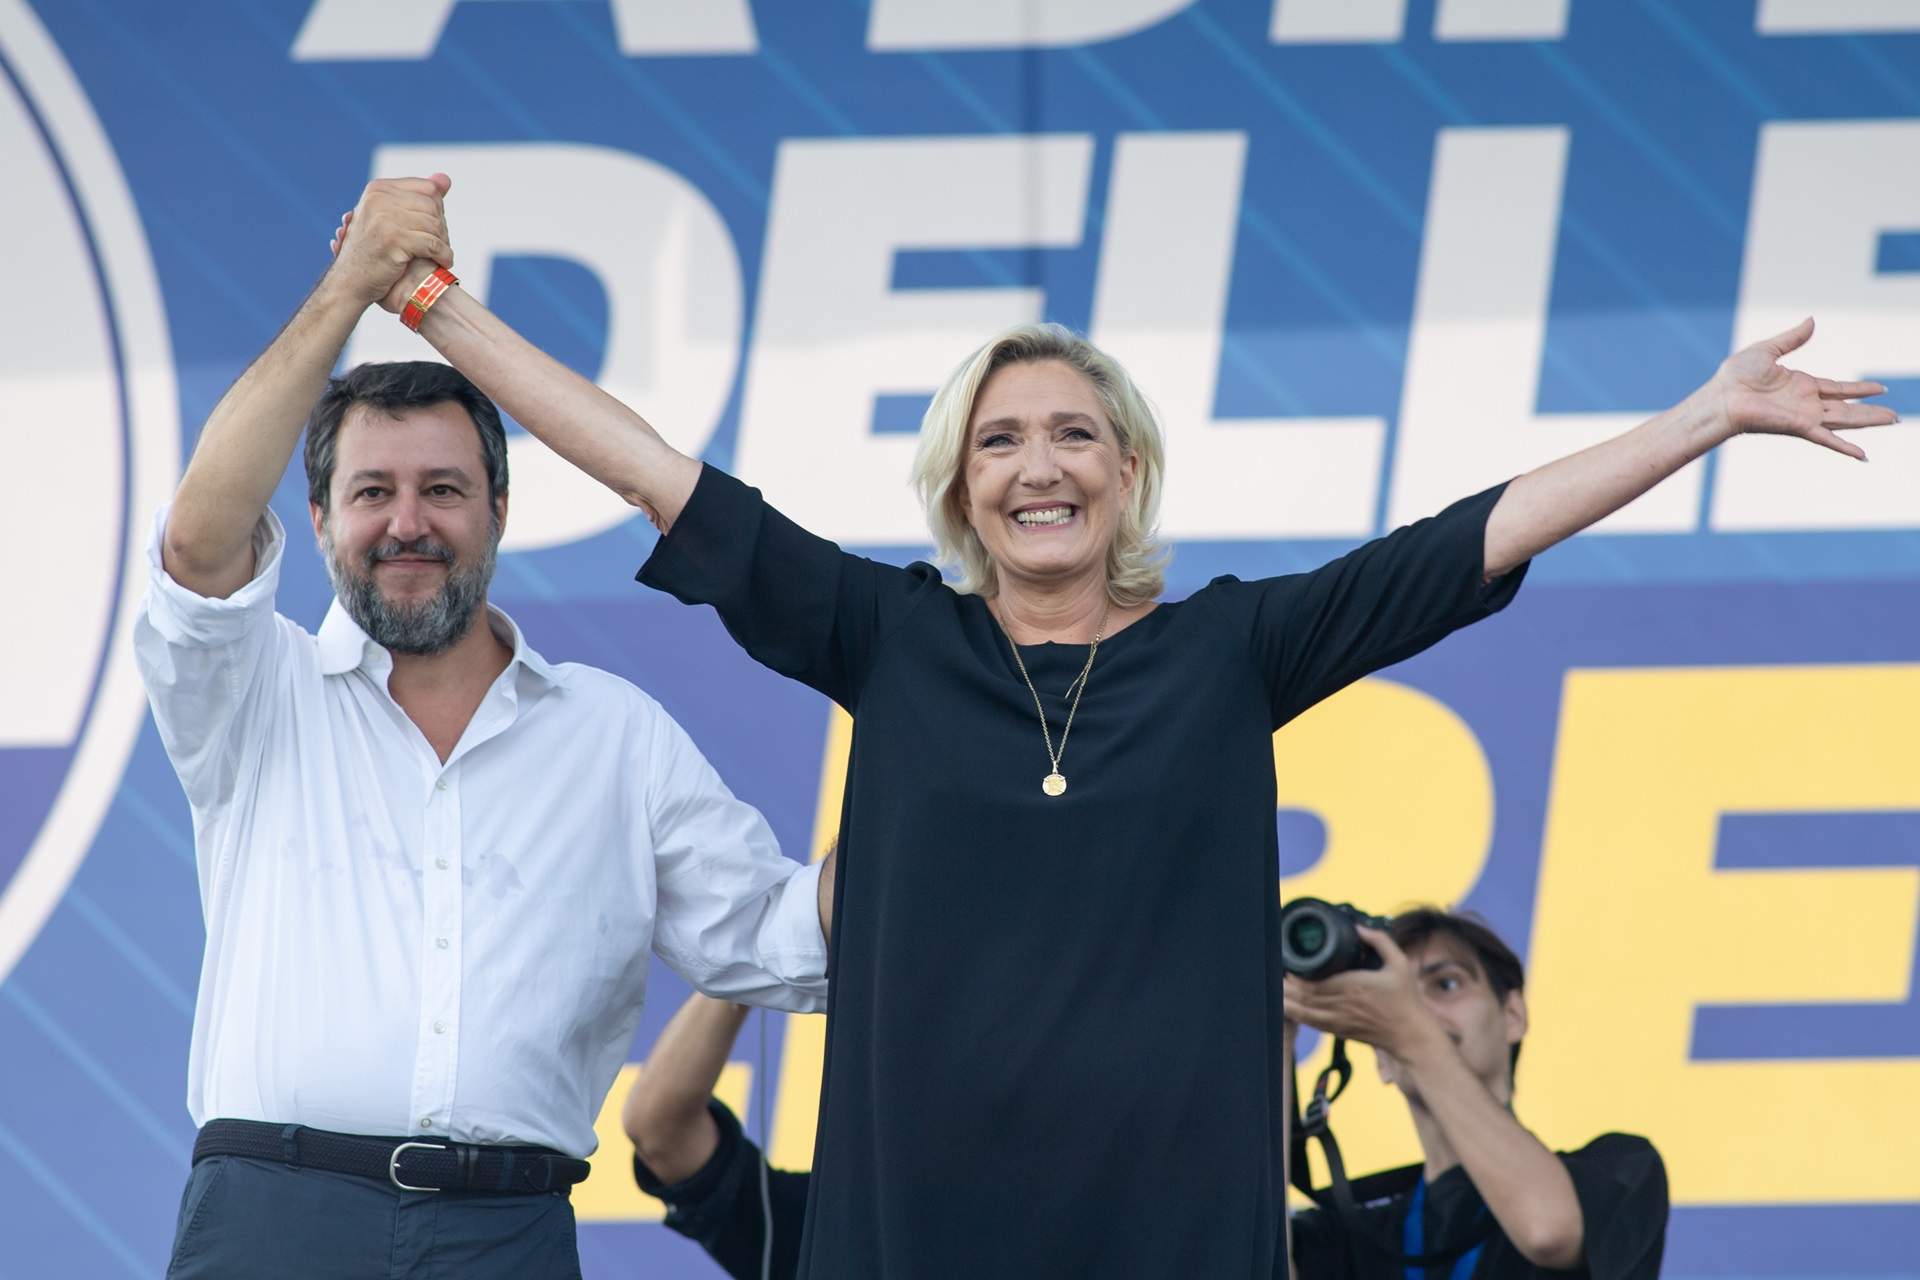 Le Pen i Salvini trenquen relacions amb l'AfD alemanya per unes declaracions sobre les SS